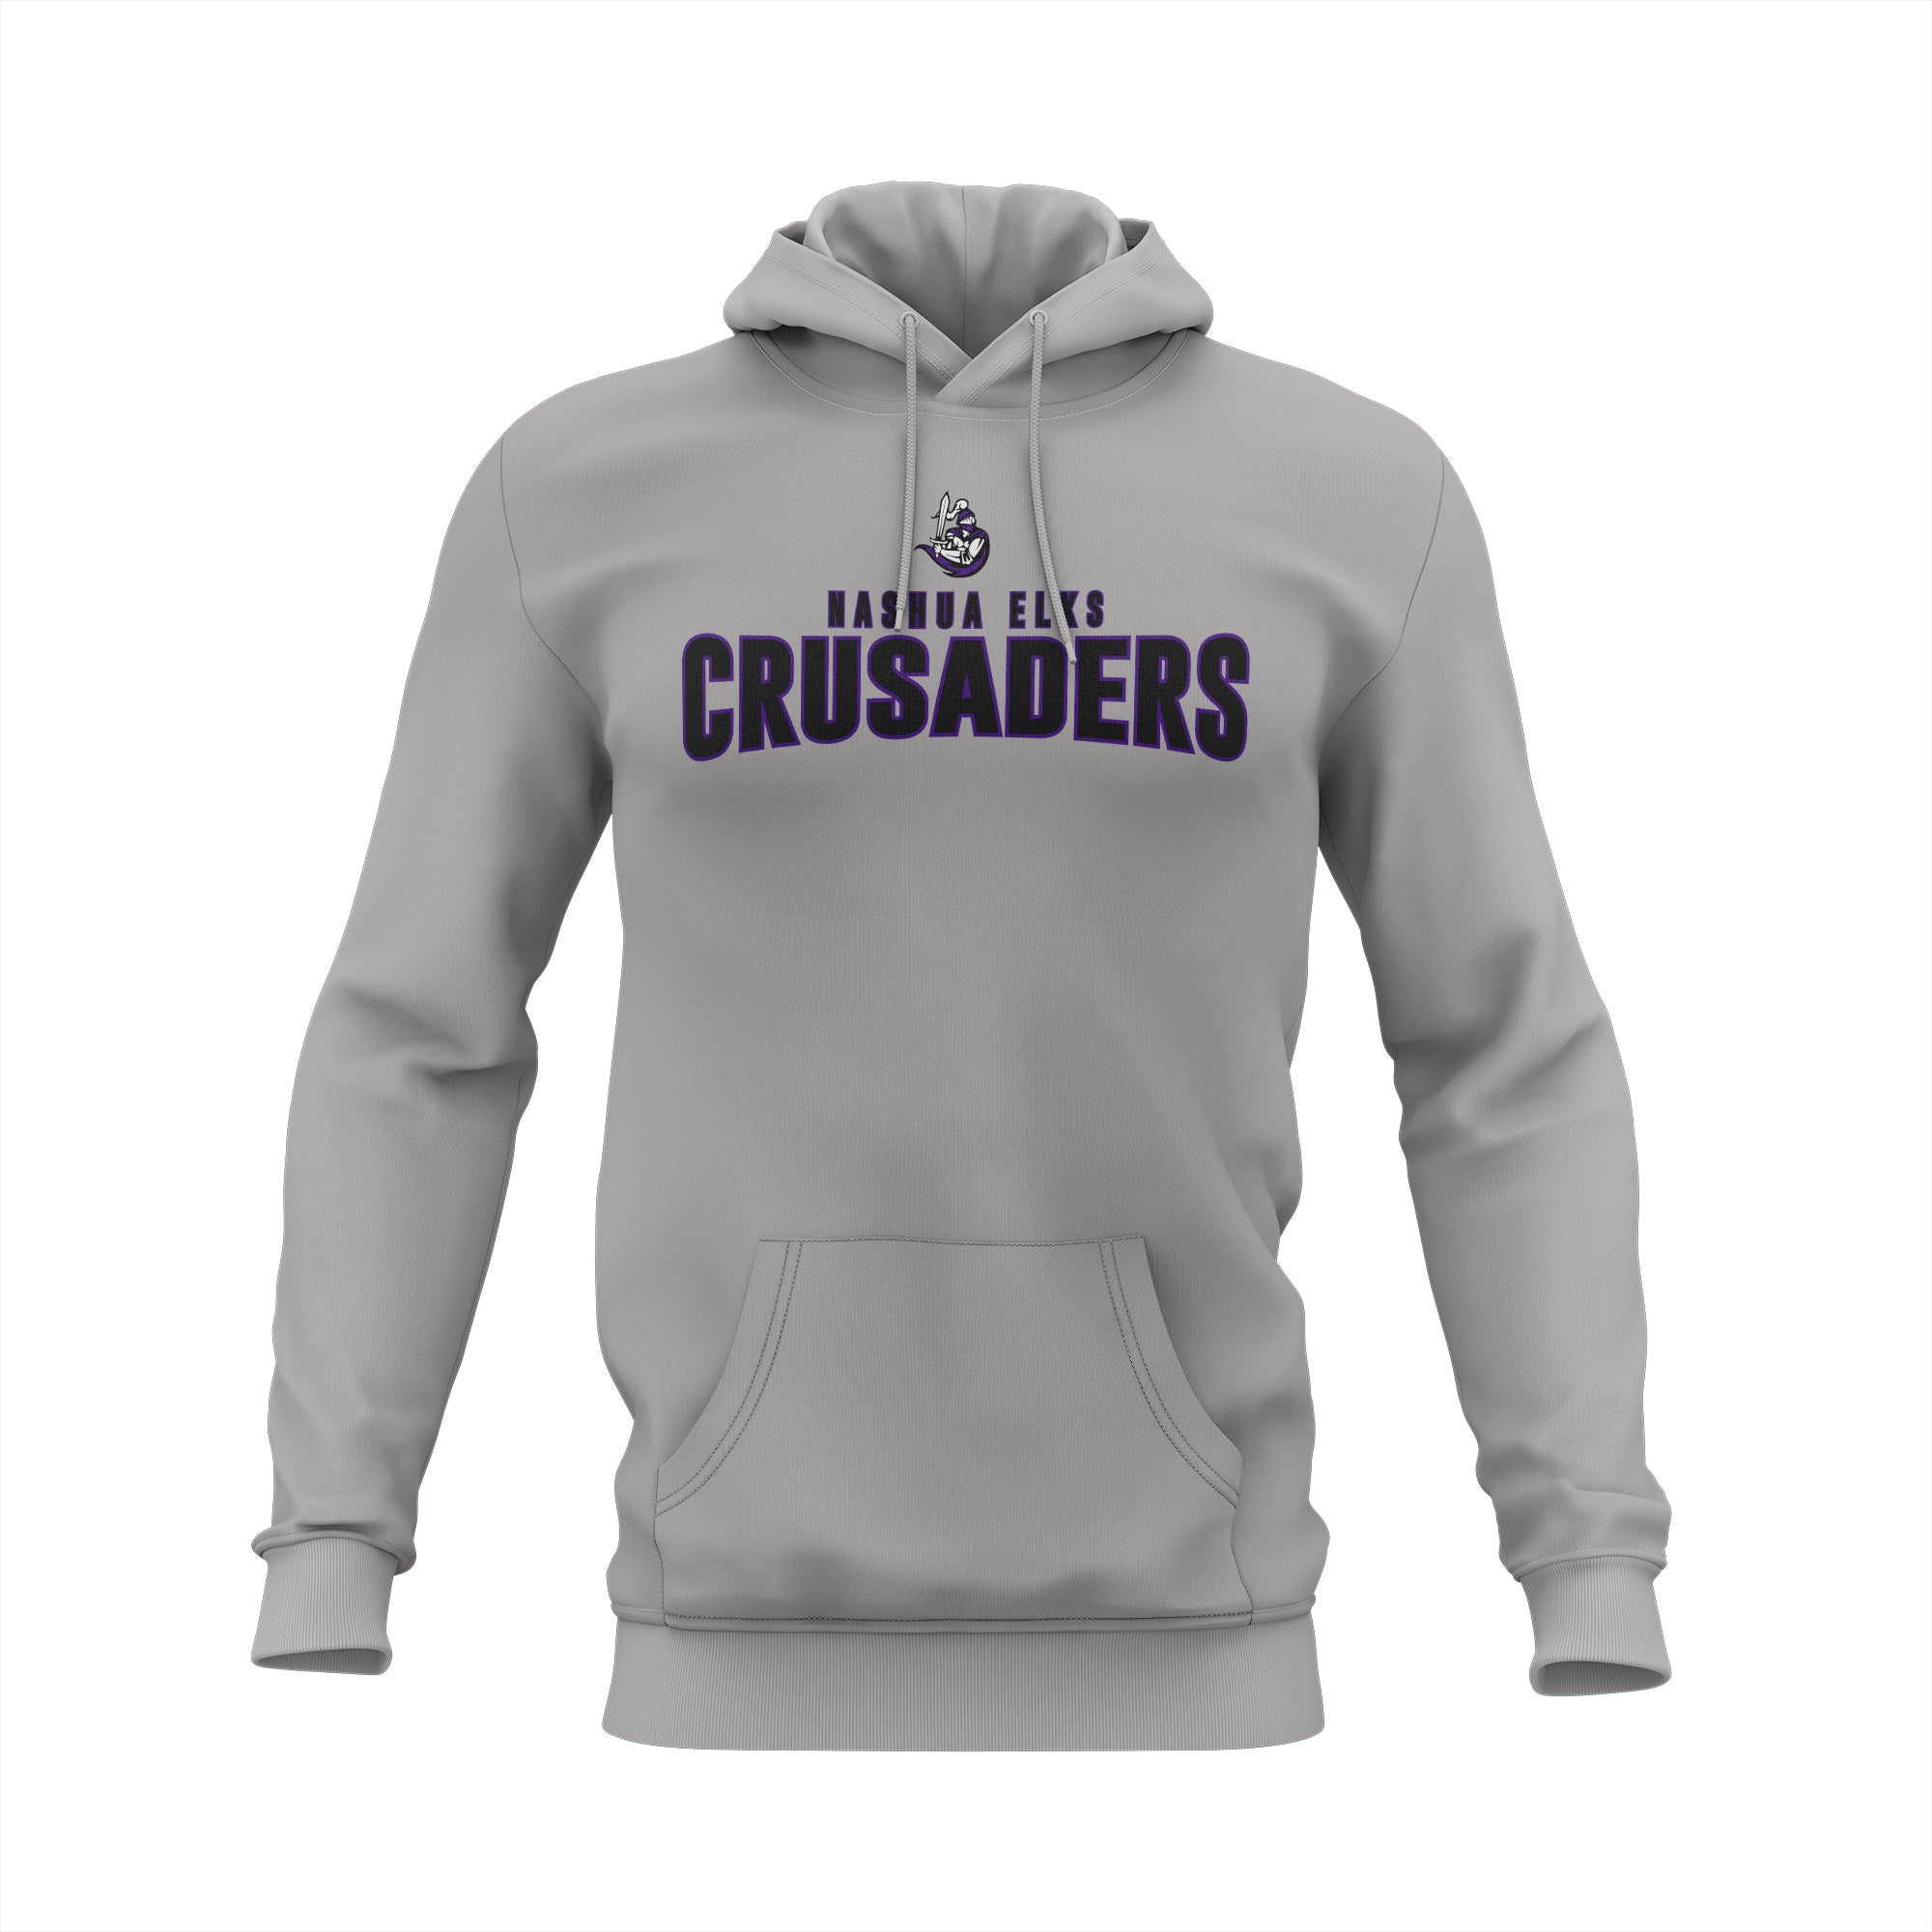 Nashua Elks Crusaders Grey Semi Sub Hoodie